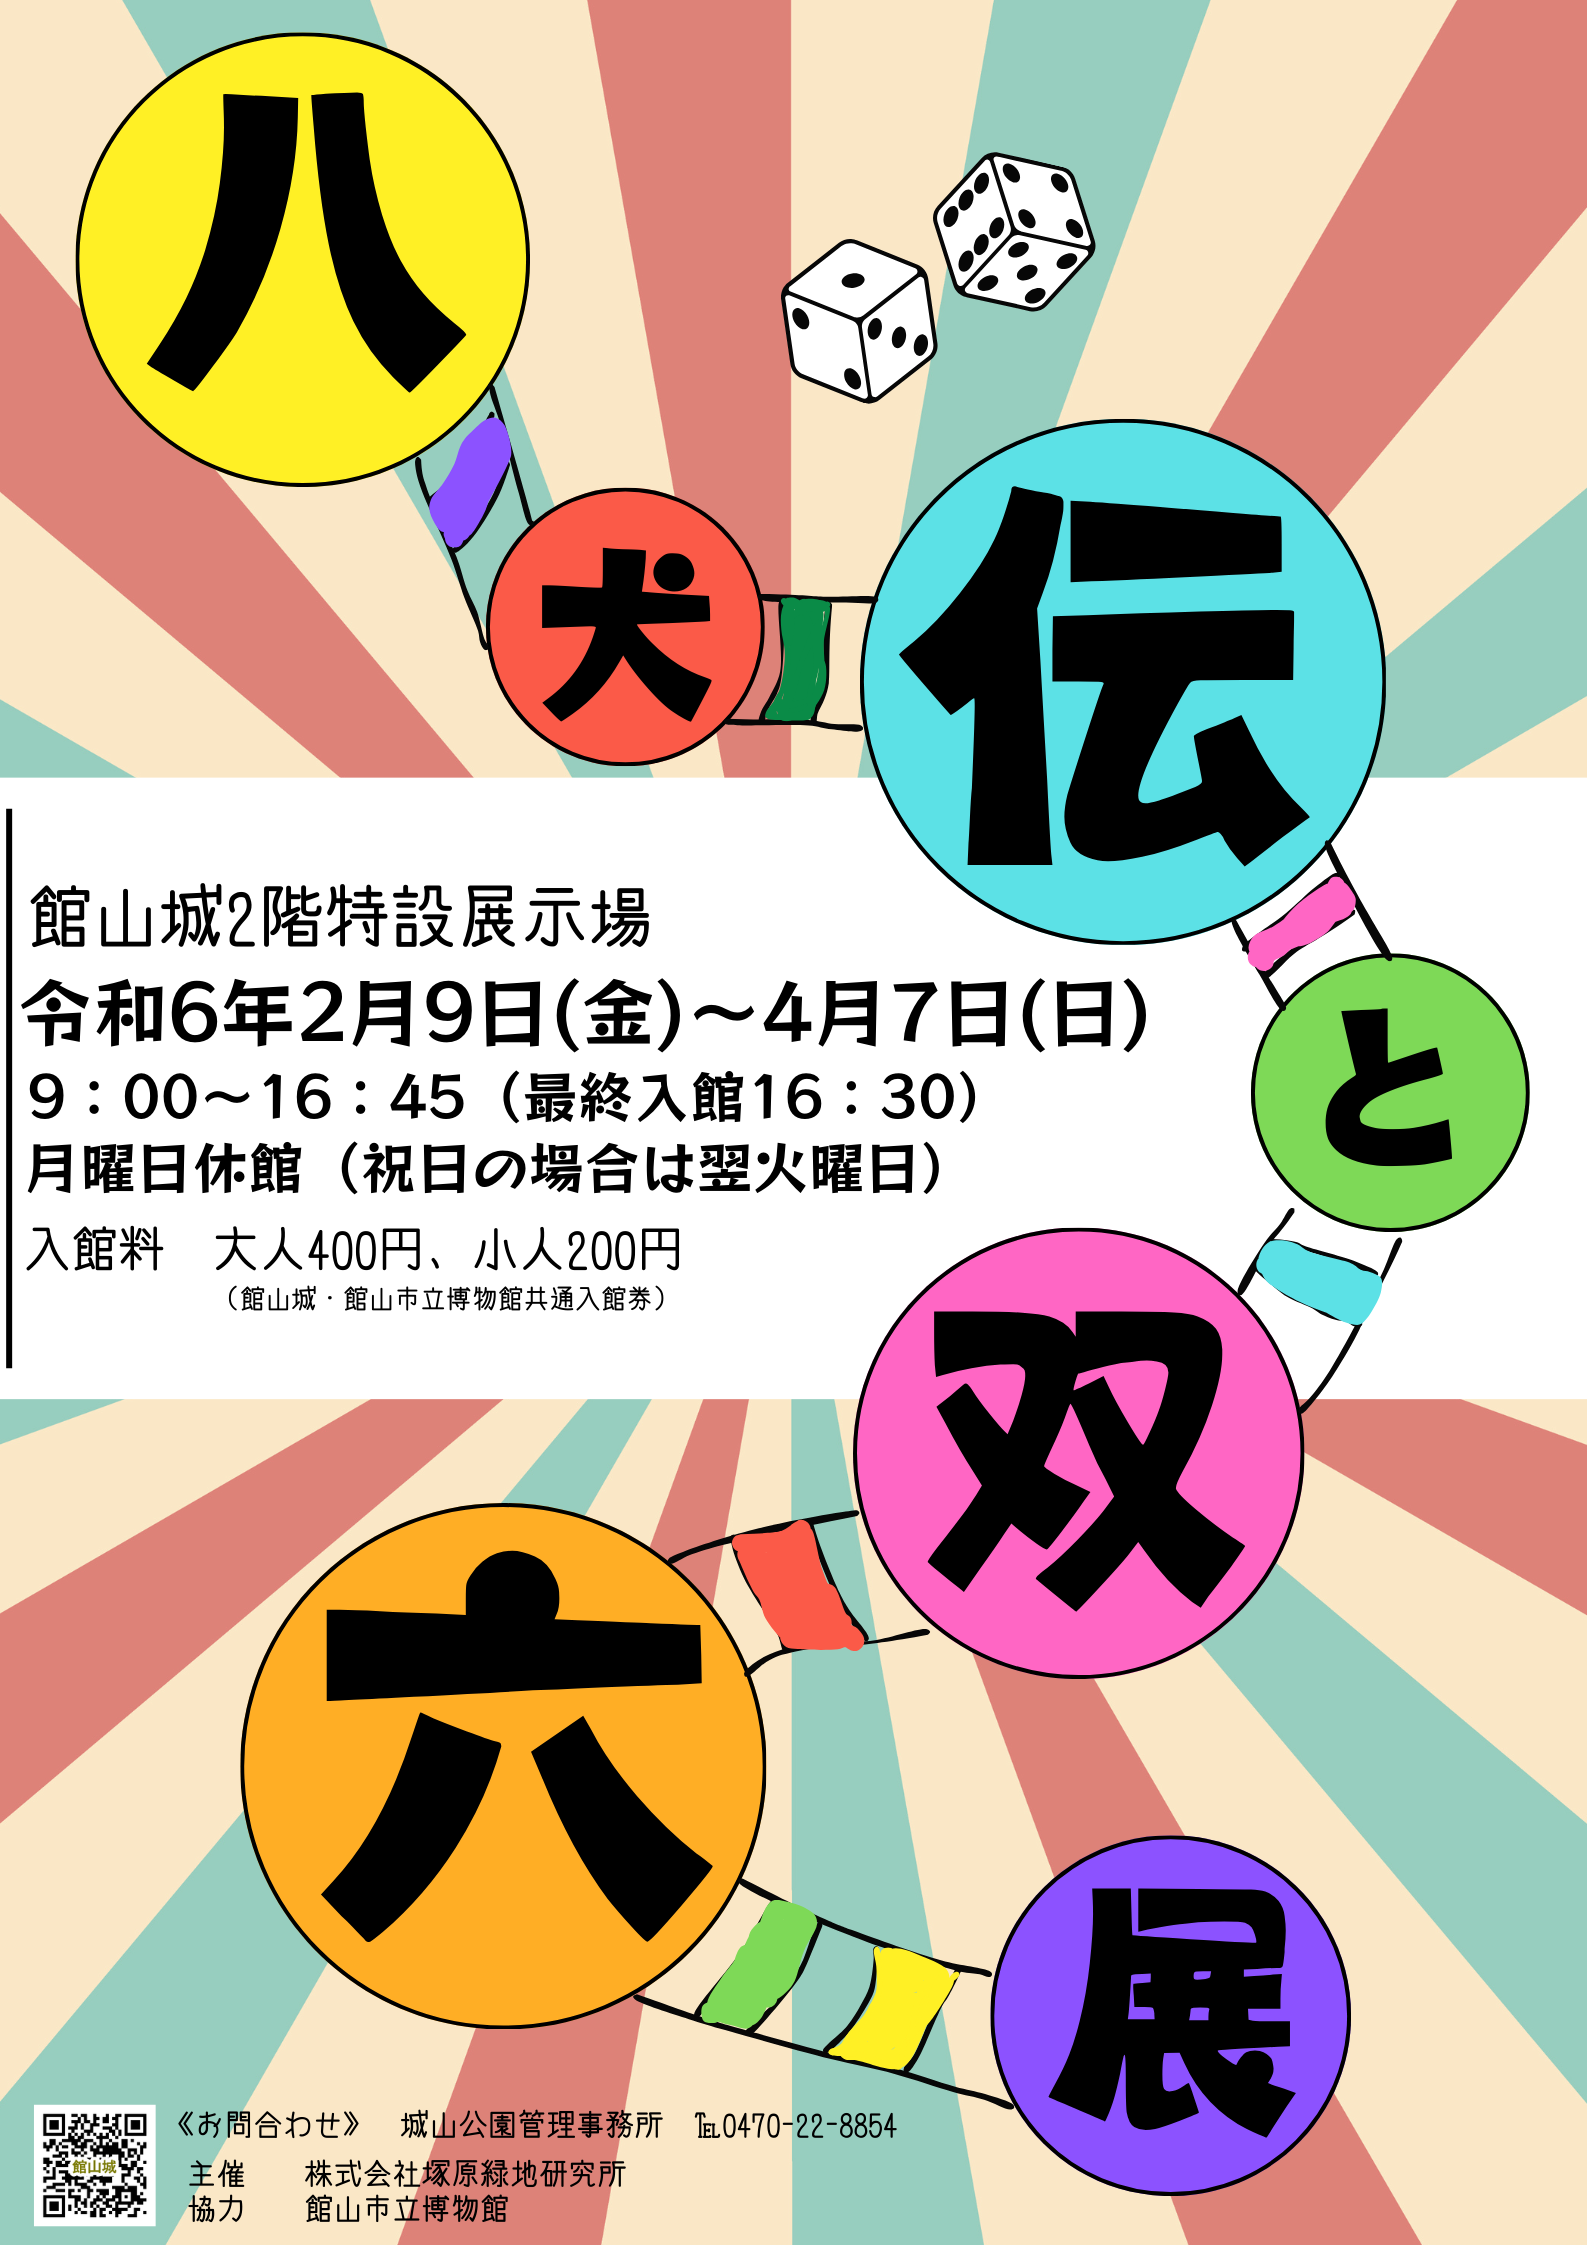 館山城2階展示場「八犬伝と双六展」開催